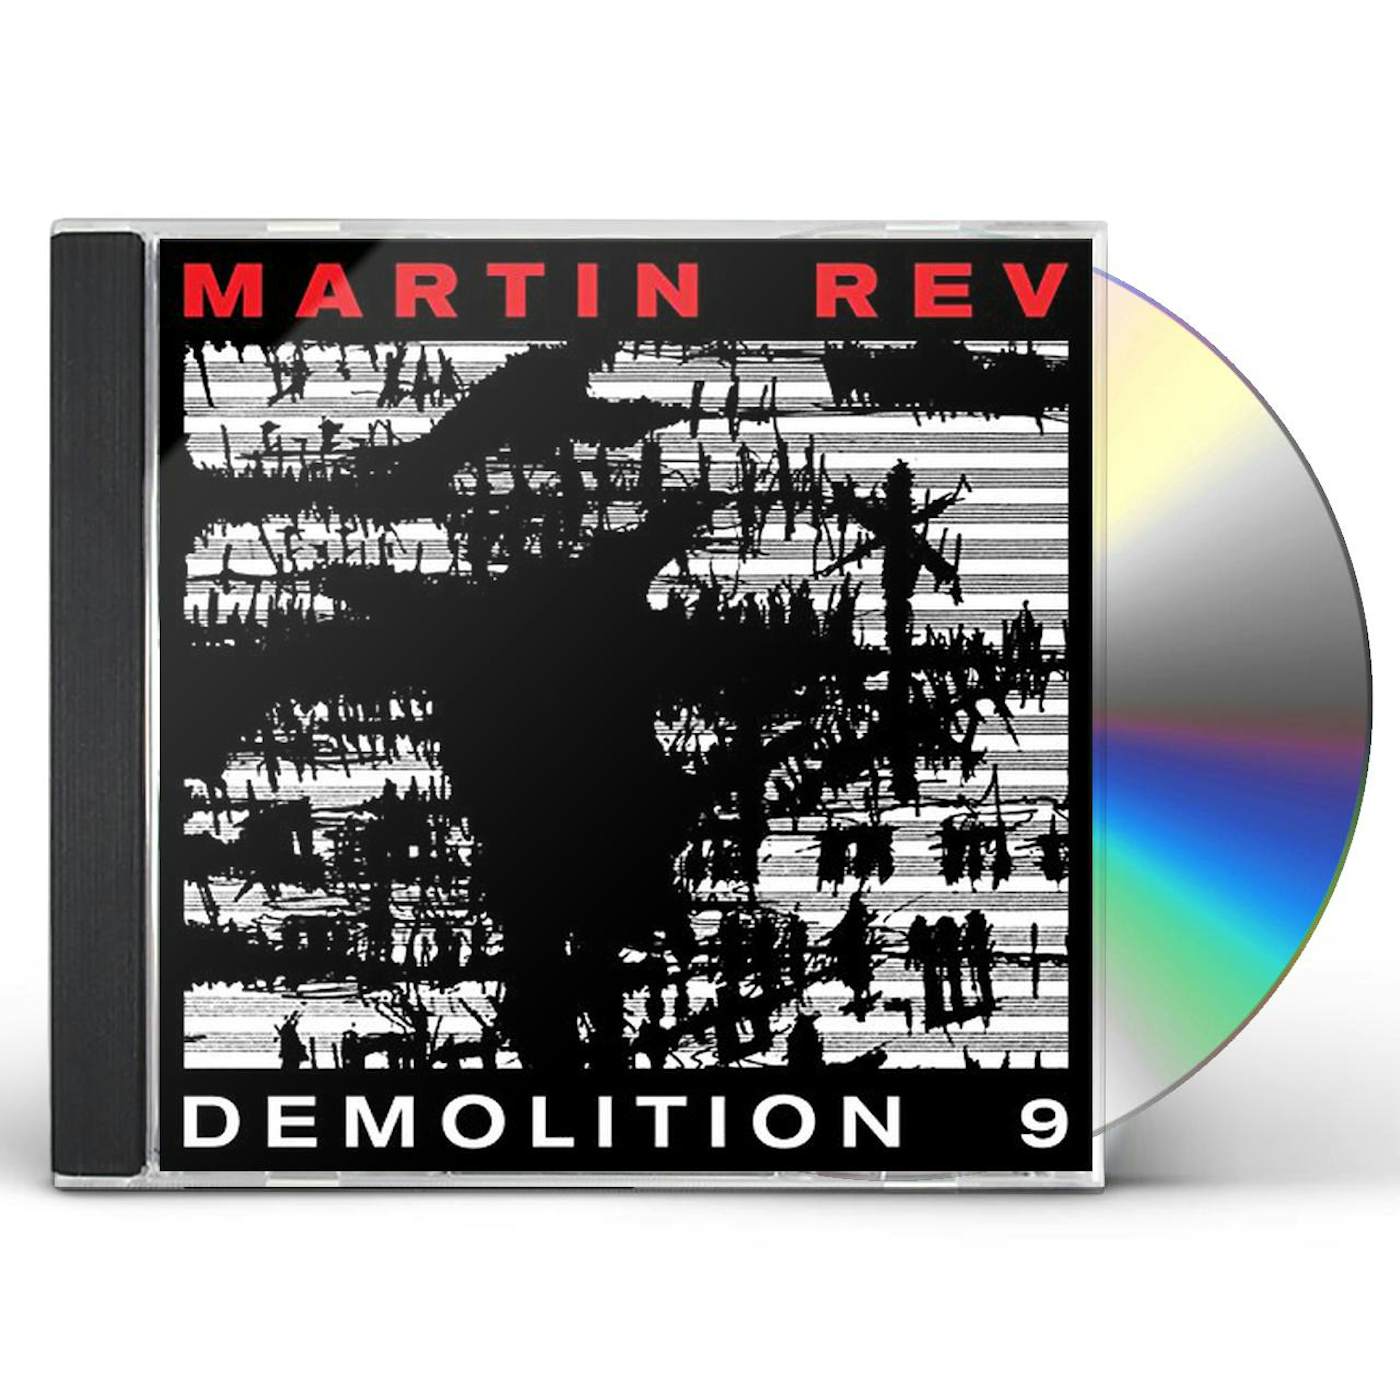 Martin Rev DEMOLITION 9 CD